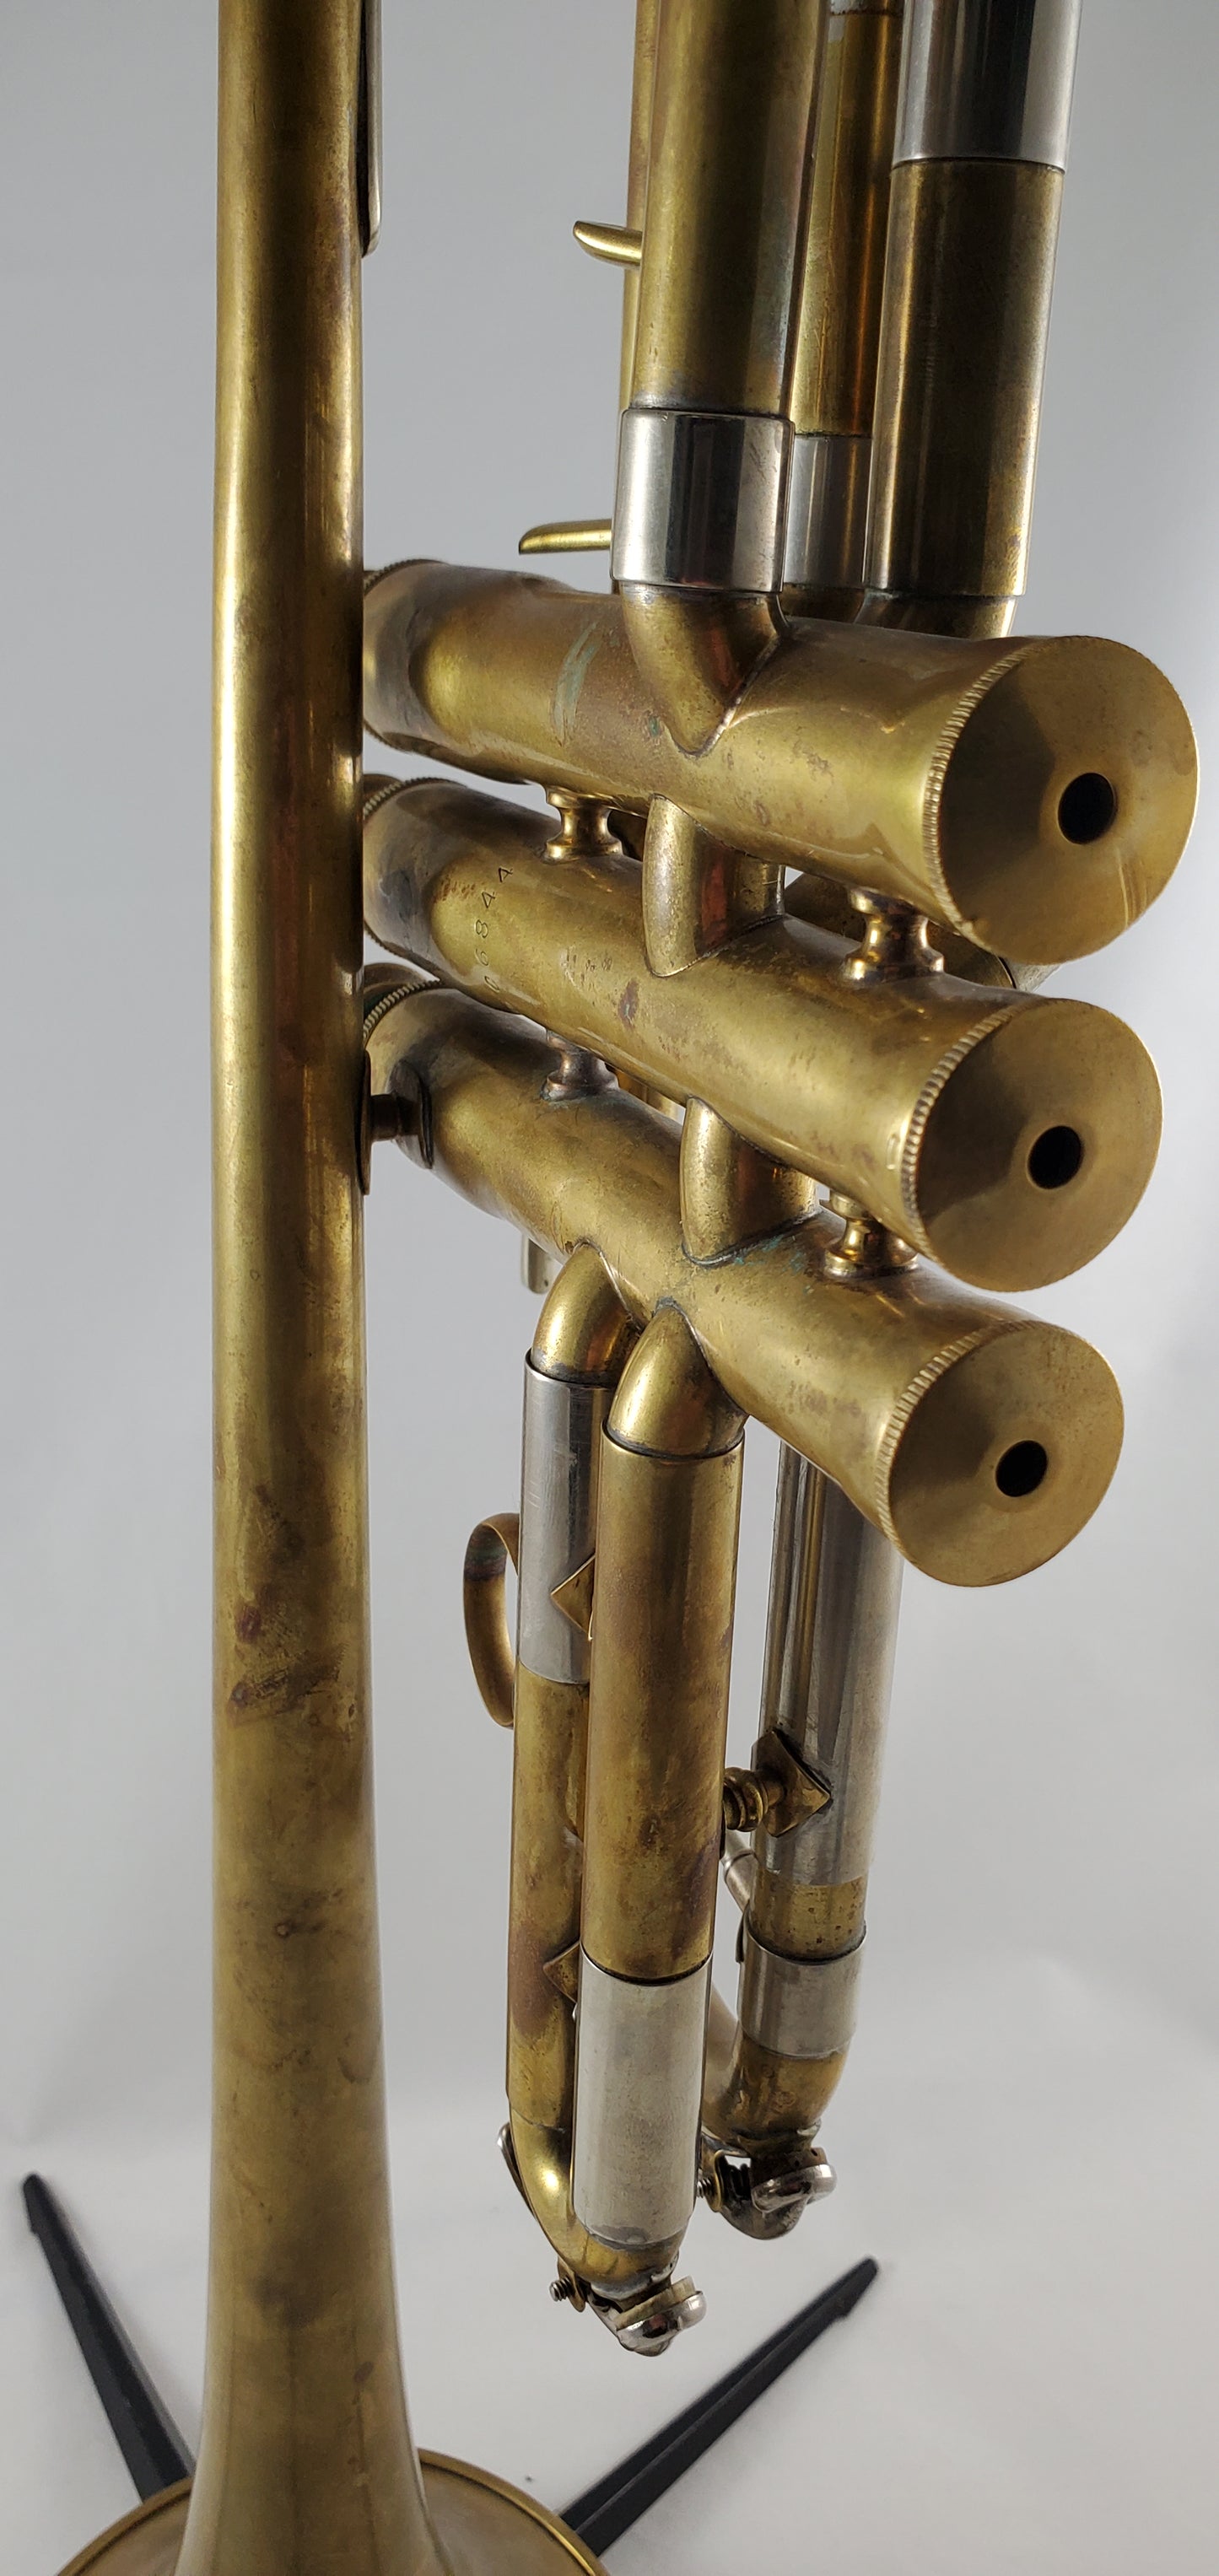 Used Buescher C Trumpet SN 506844